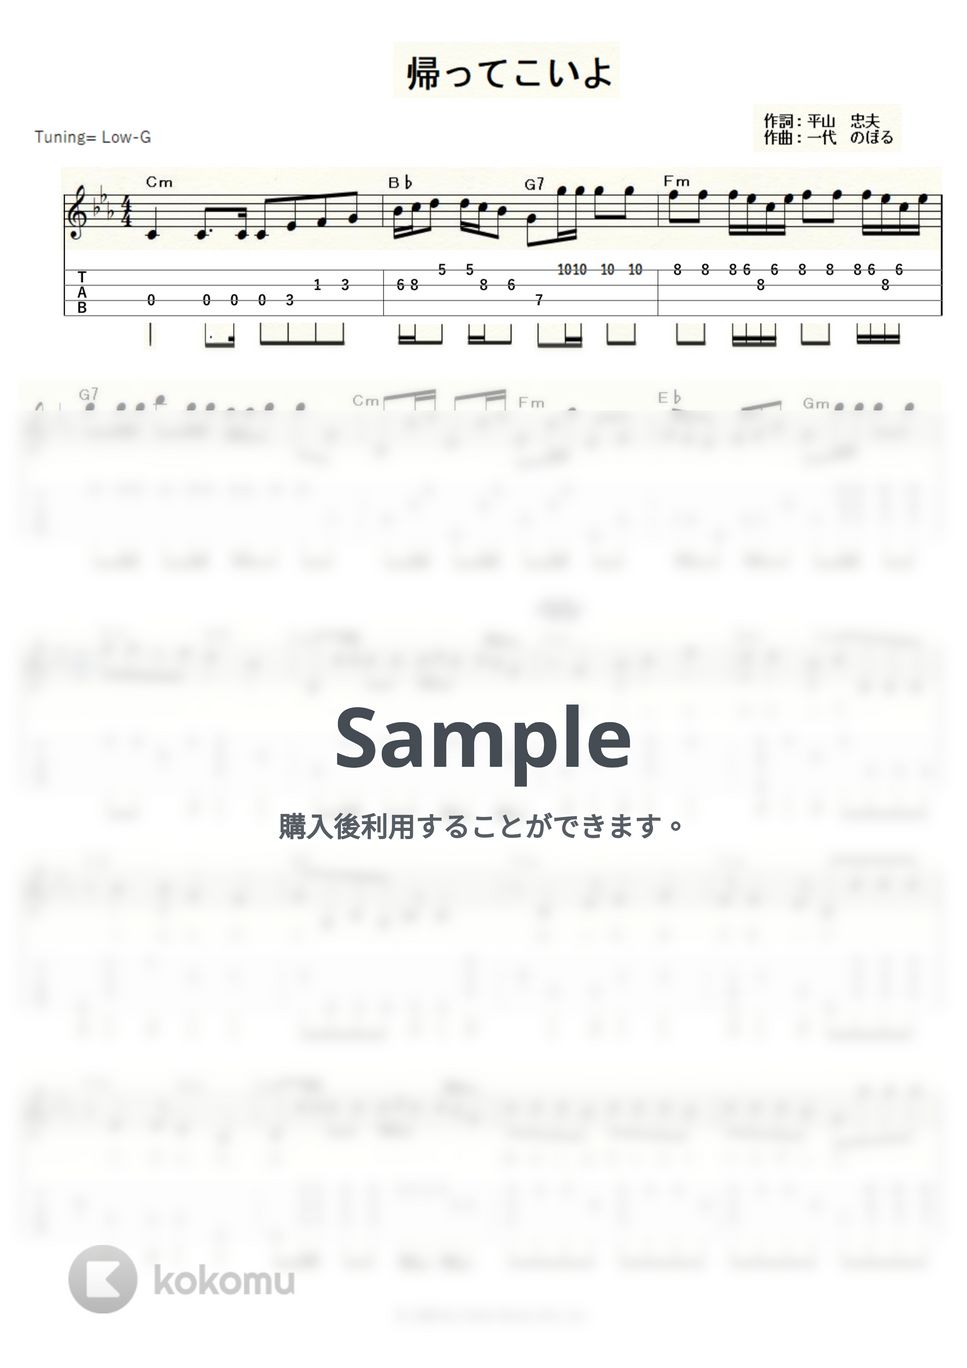 松村和子 - 帰ってこいよ (ｳｸﾚﾚｿﾛ/Low-G/中級) by ukulelepapa